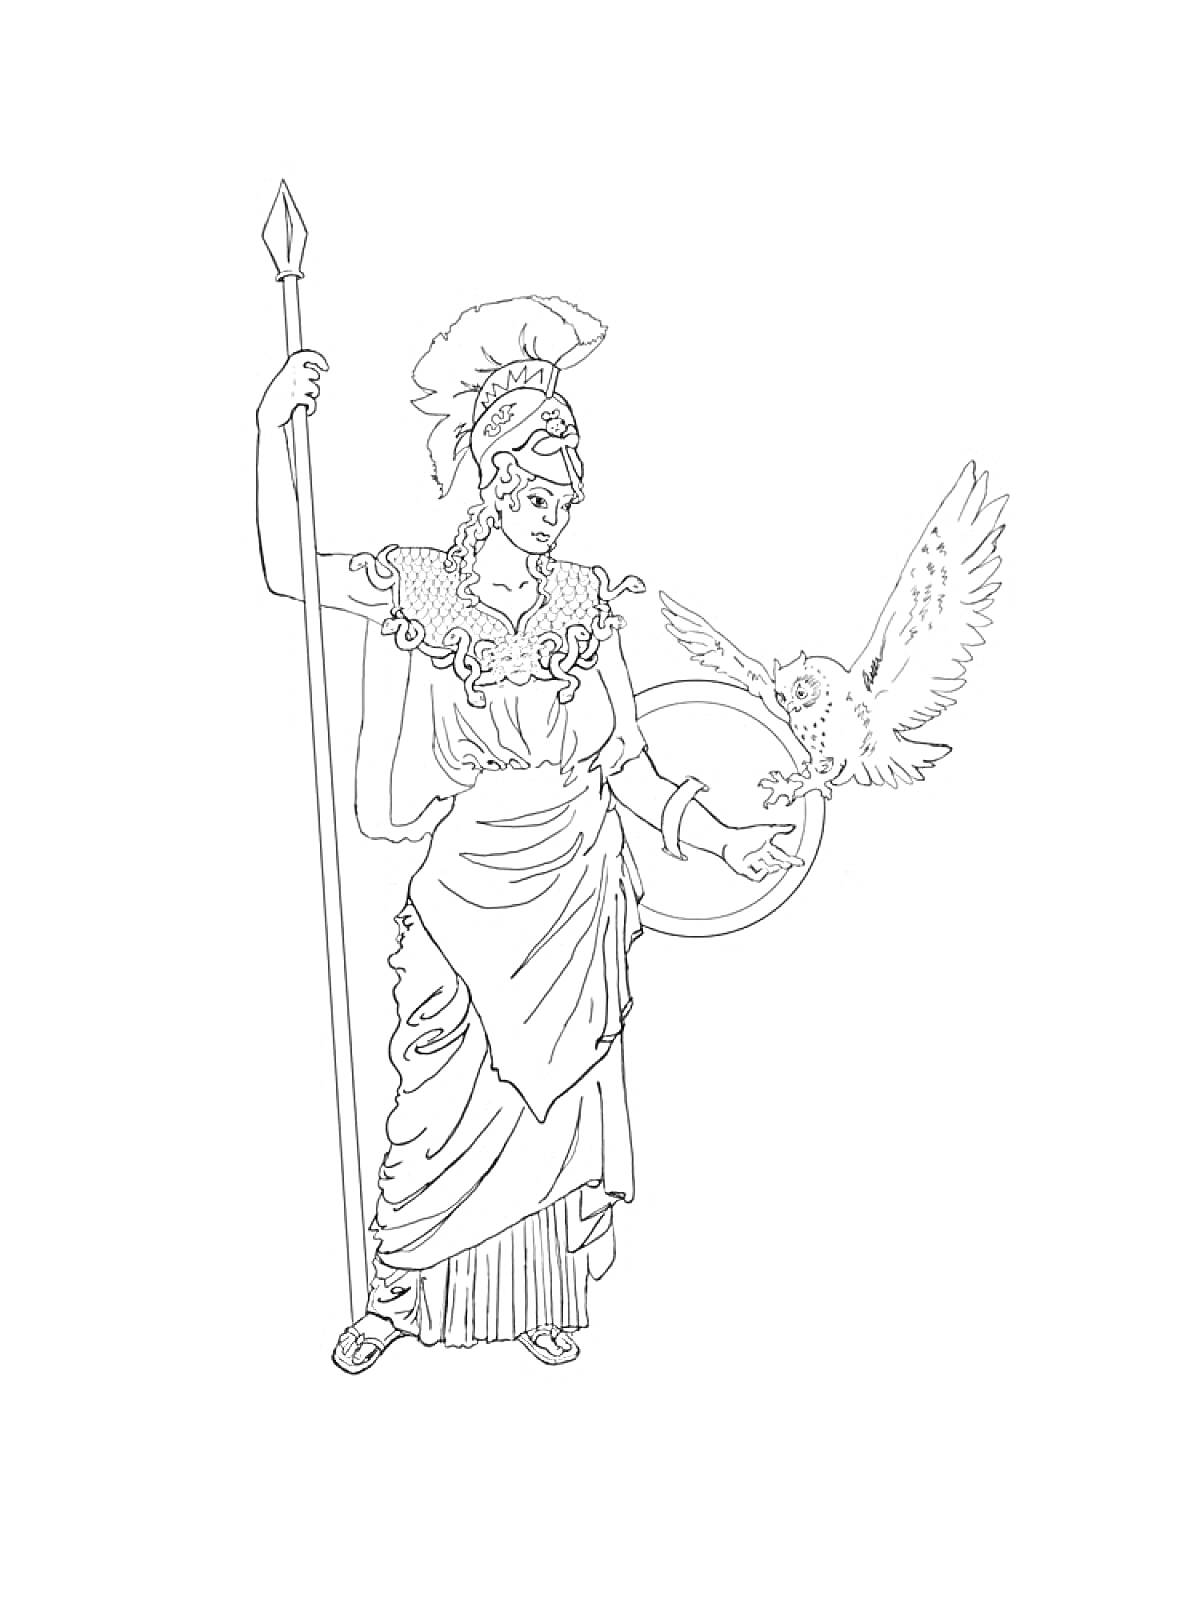 Богиня с копьем, в шлеме, с совой на руках